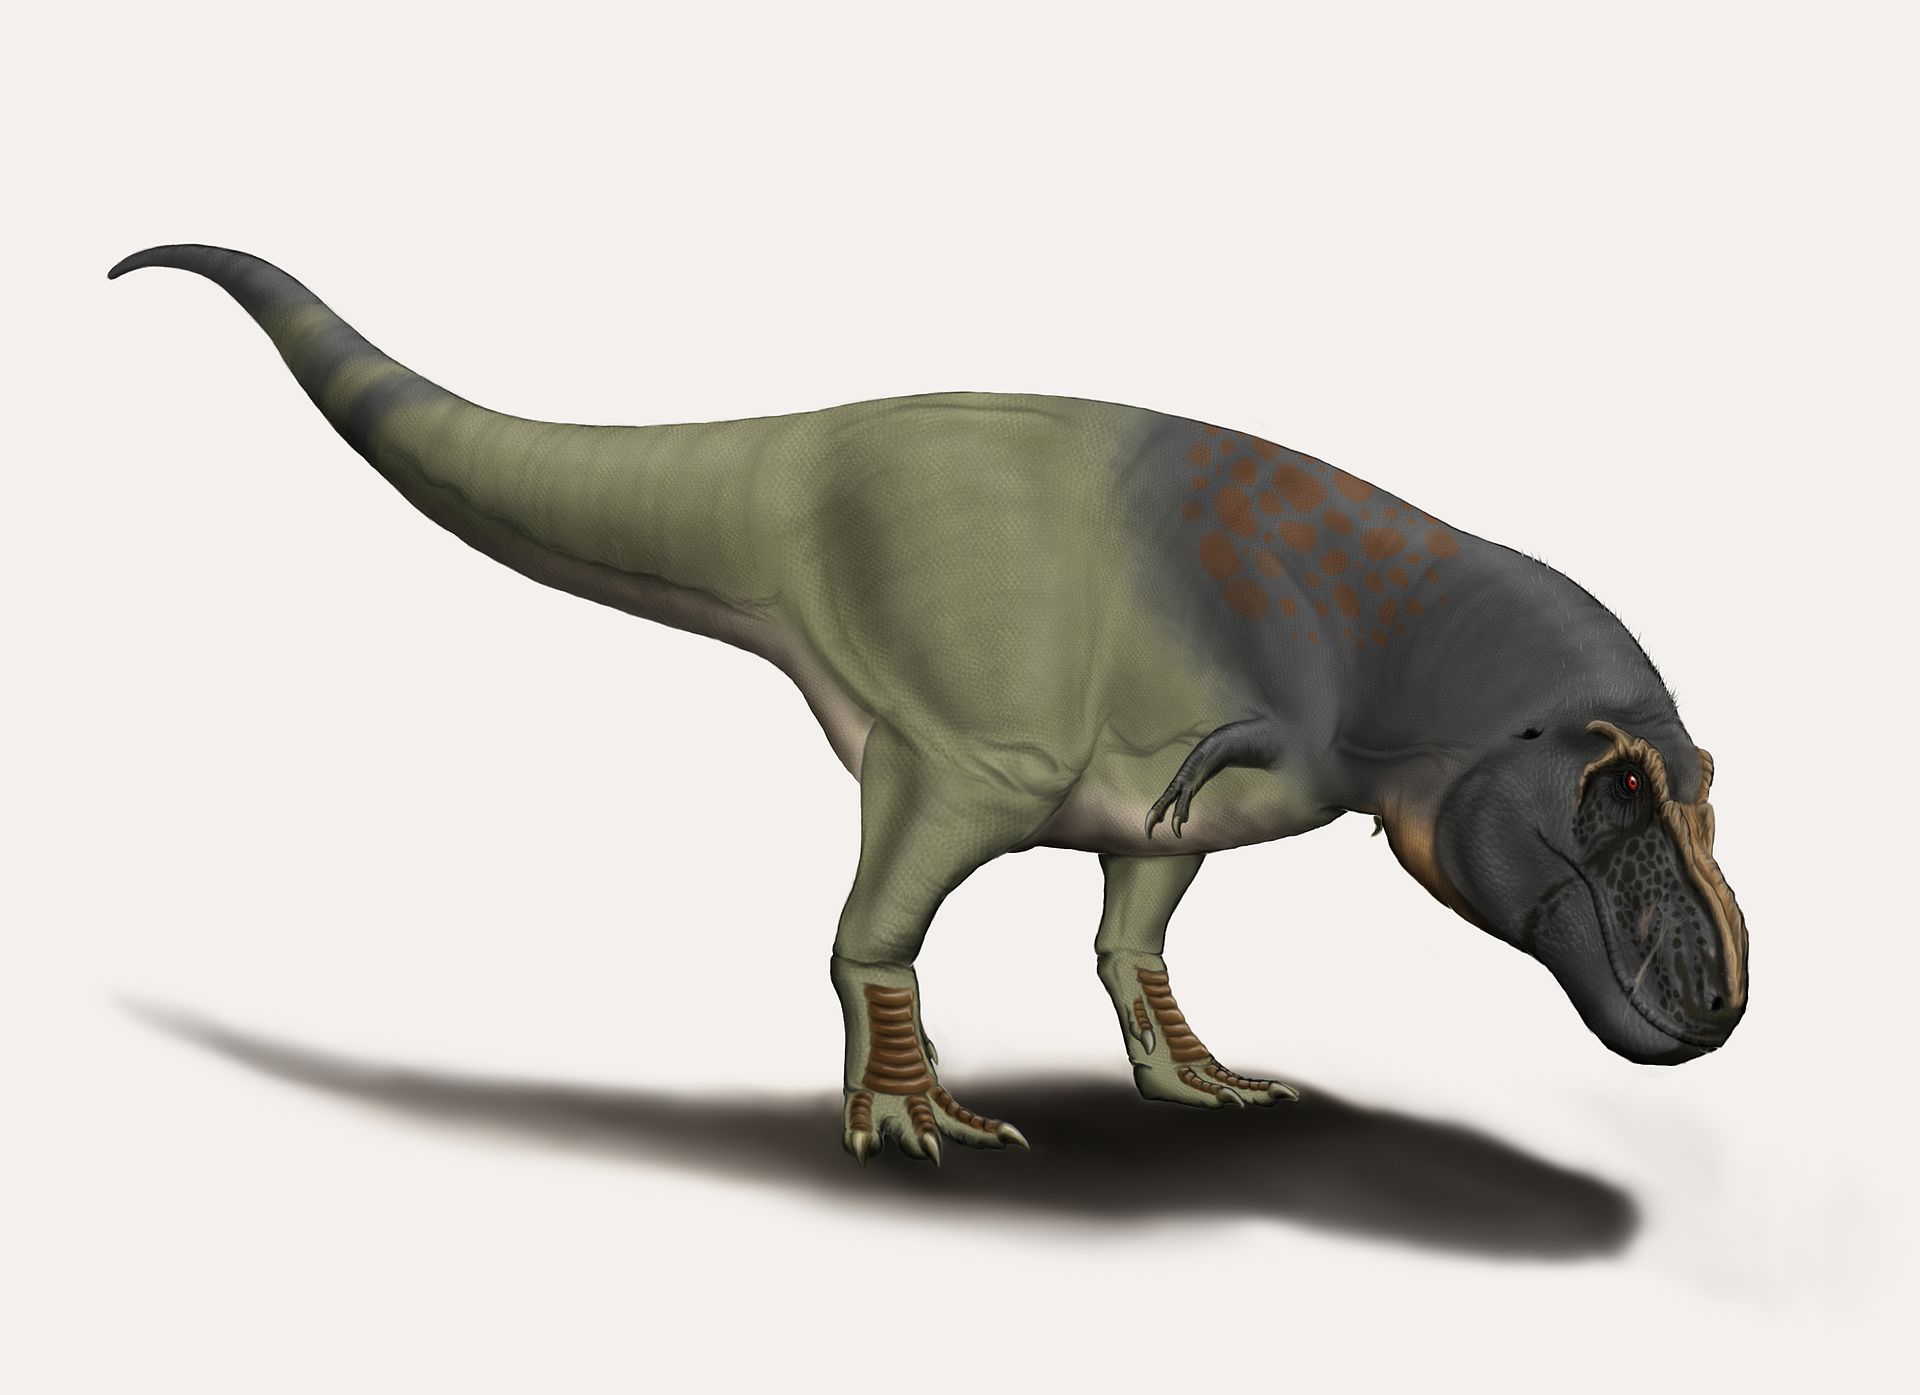 Objevy fosilních zubů a kostí velkých tyranosauridů z oblasti ruského Dálného východu dokládají, že tato skupina obřích pozdně křídových teropodů byla rozšířena více, než se dosud předpokládalo. Zatím ale nevíme s jistotou, zda se již zde objevil nej